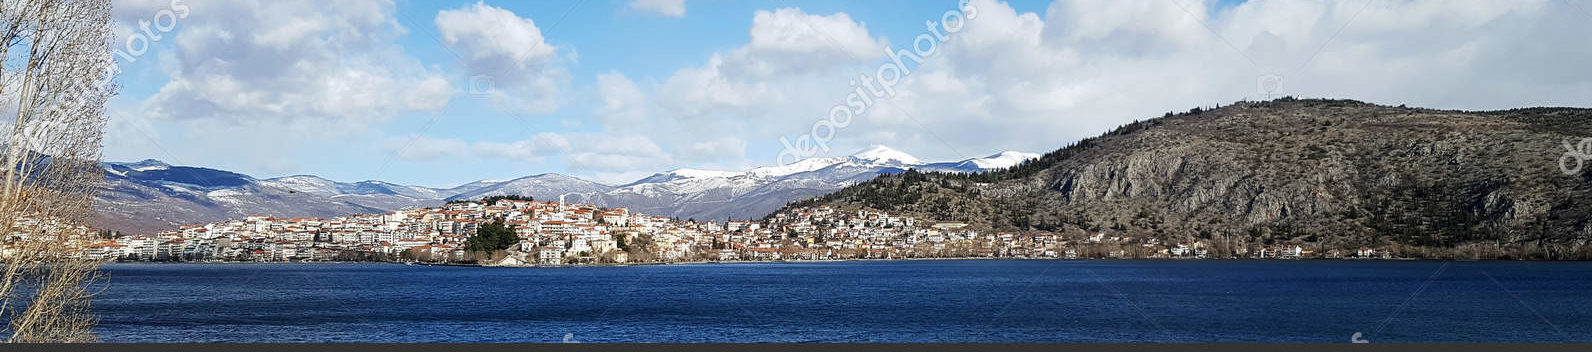 Озеро в Греции, панорама